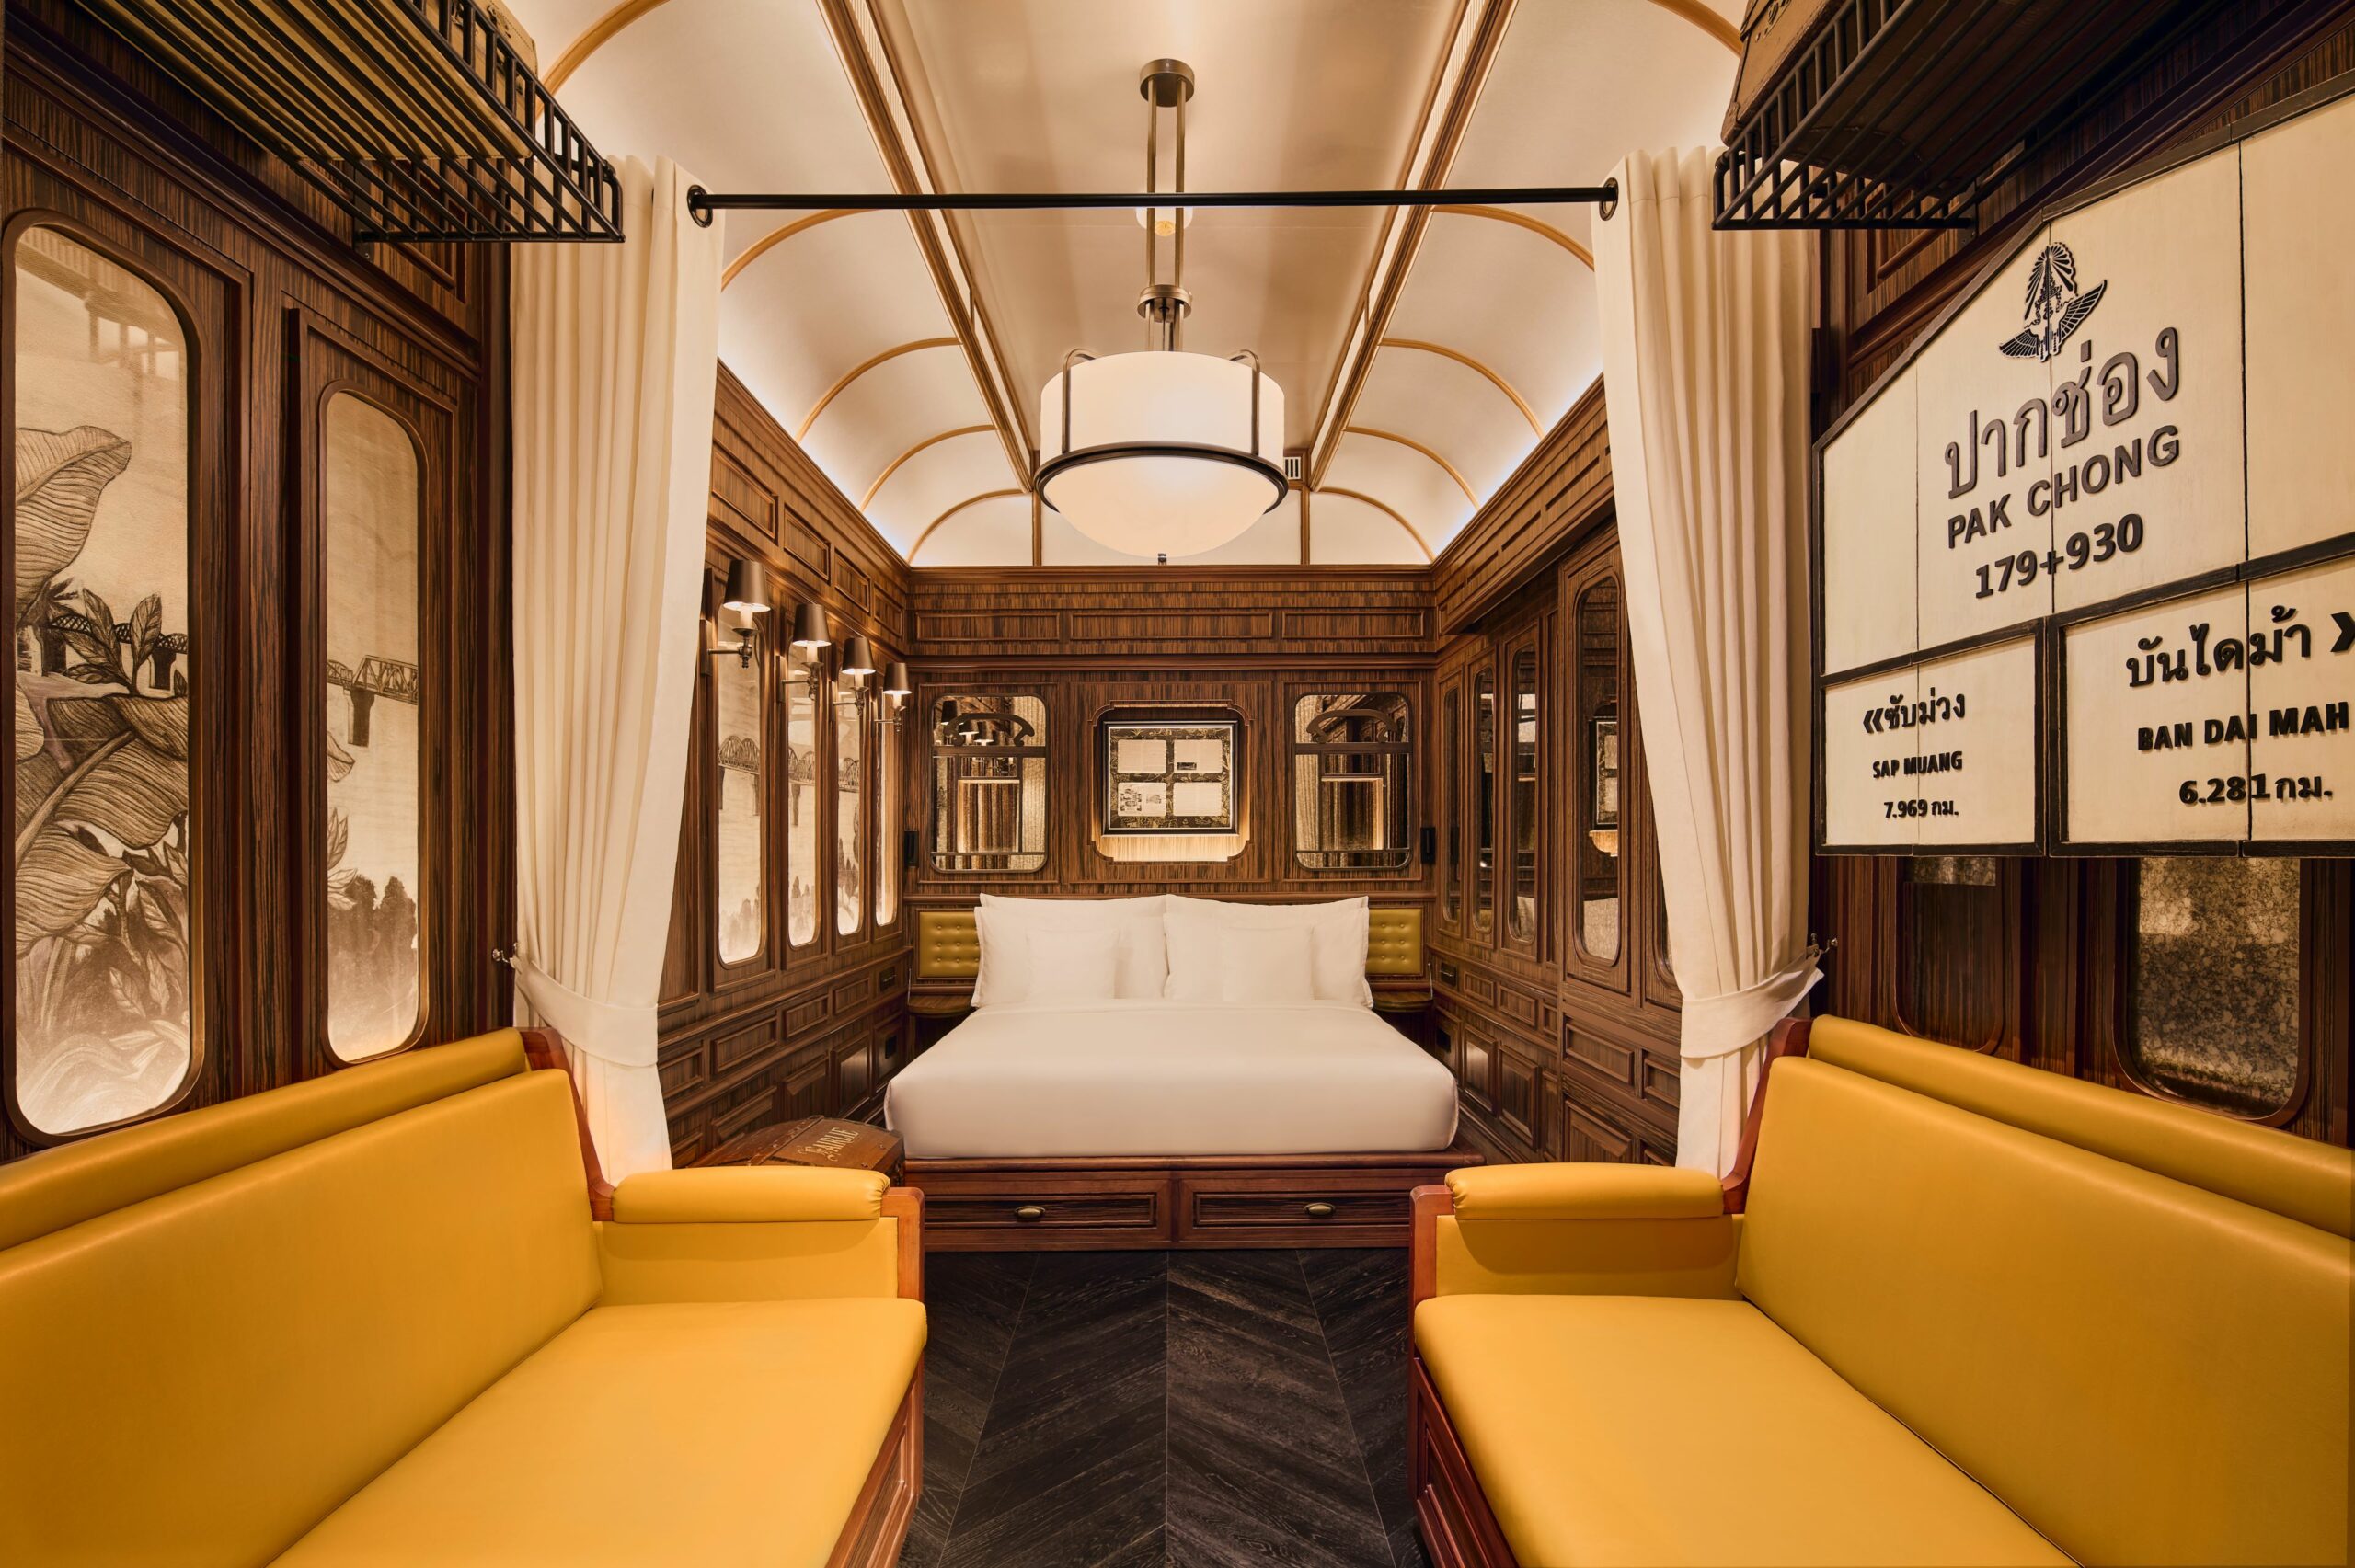 ห้องสวีทโรงแรมในธีมรถไฟสีน้ำตาลและขาวกับที่นั่งสีทองที่ อินเตอร์คอนติเนนตัล เขาใหญ่ รีสอร์ต